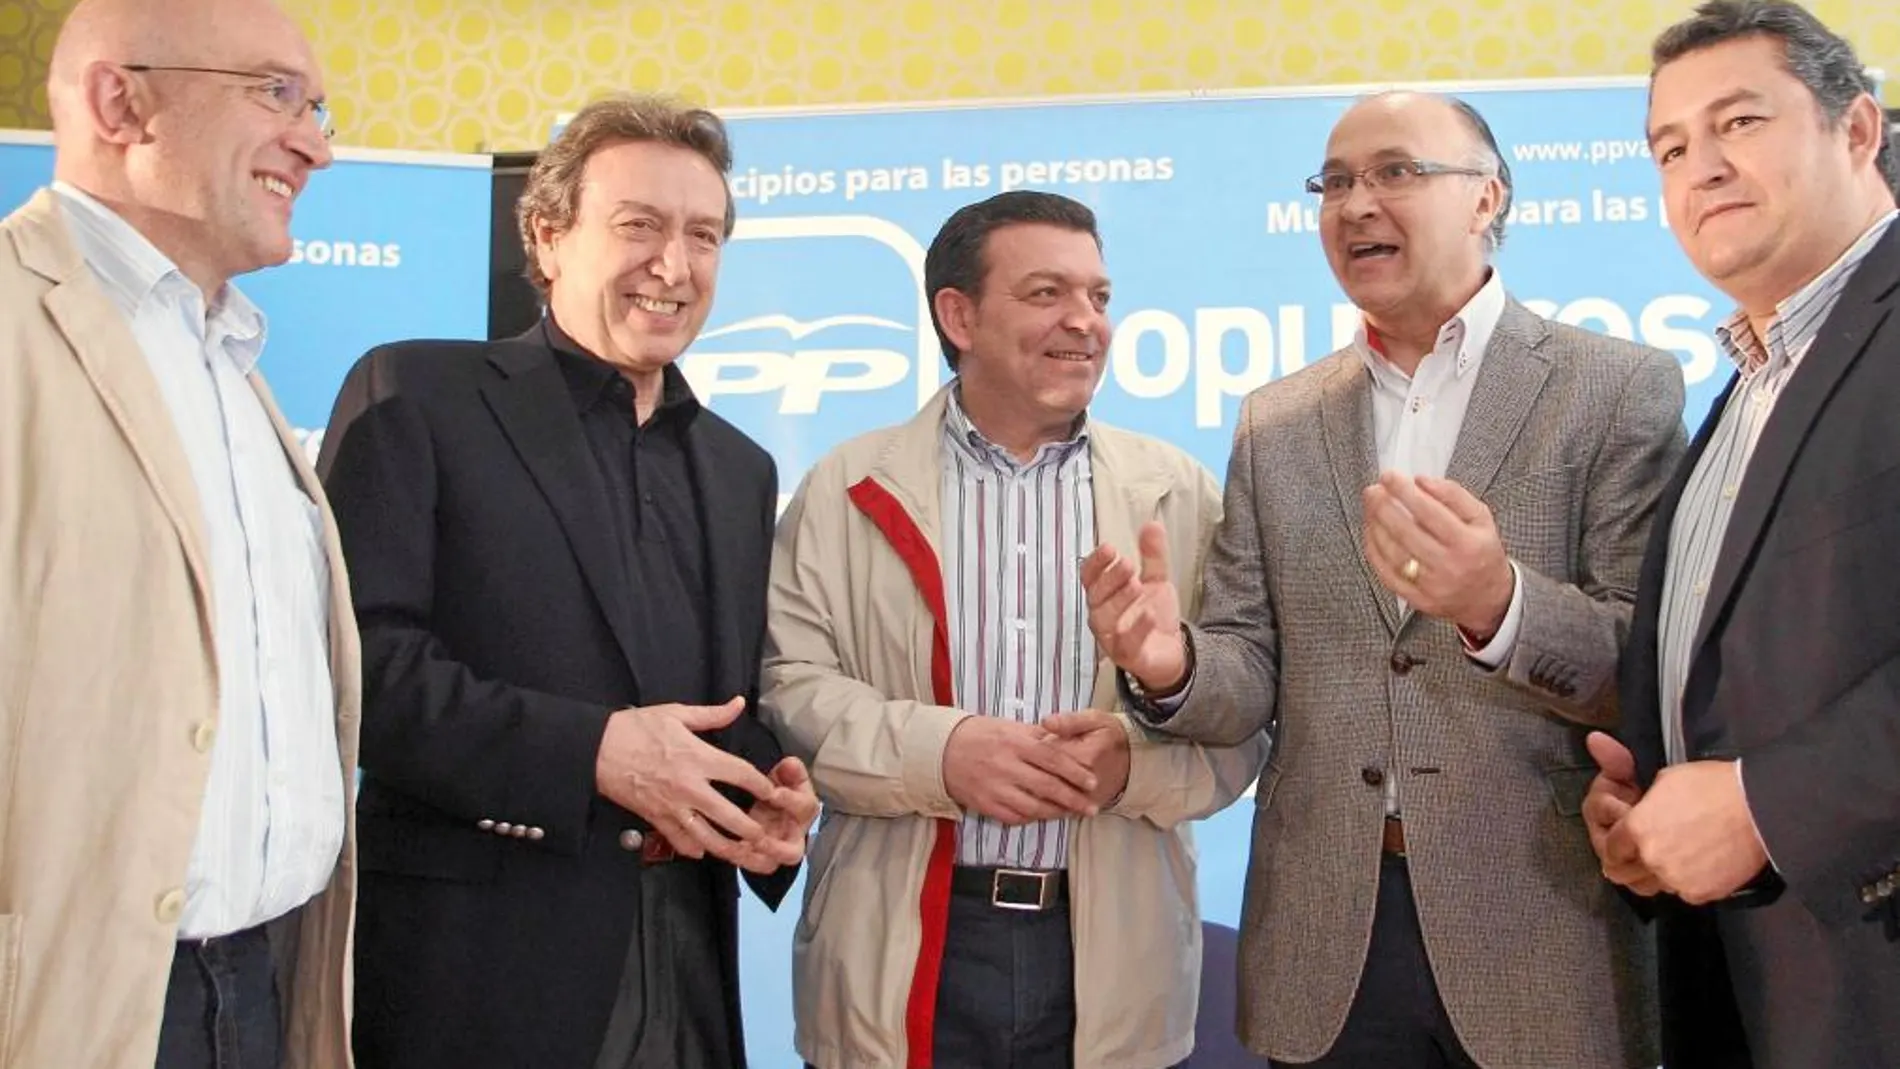 Jesús Julio Carnero, José Antonio de Santiago-Juárez, Antonio Sanz y Ramiro Ruiz Medrano